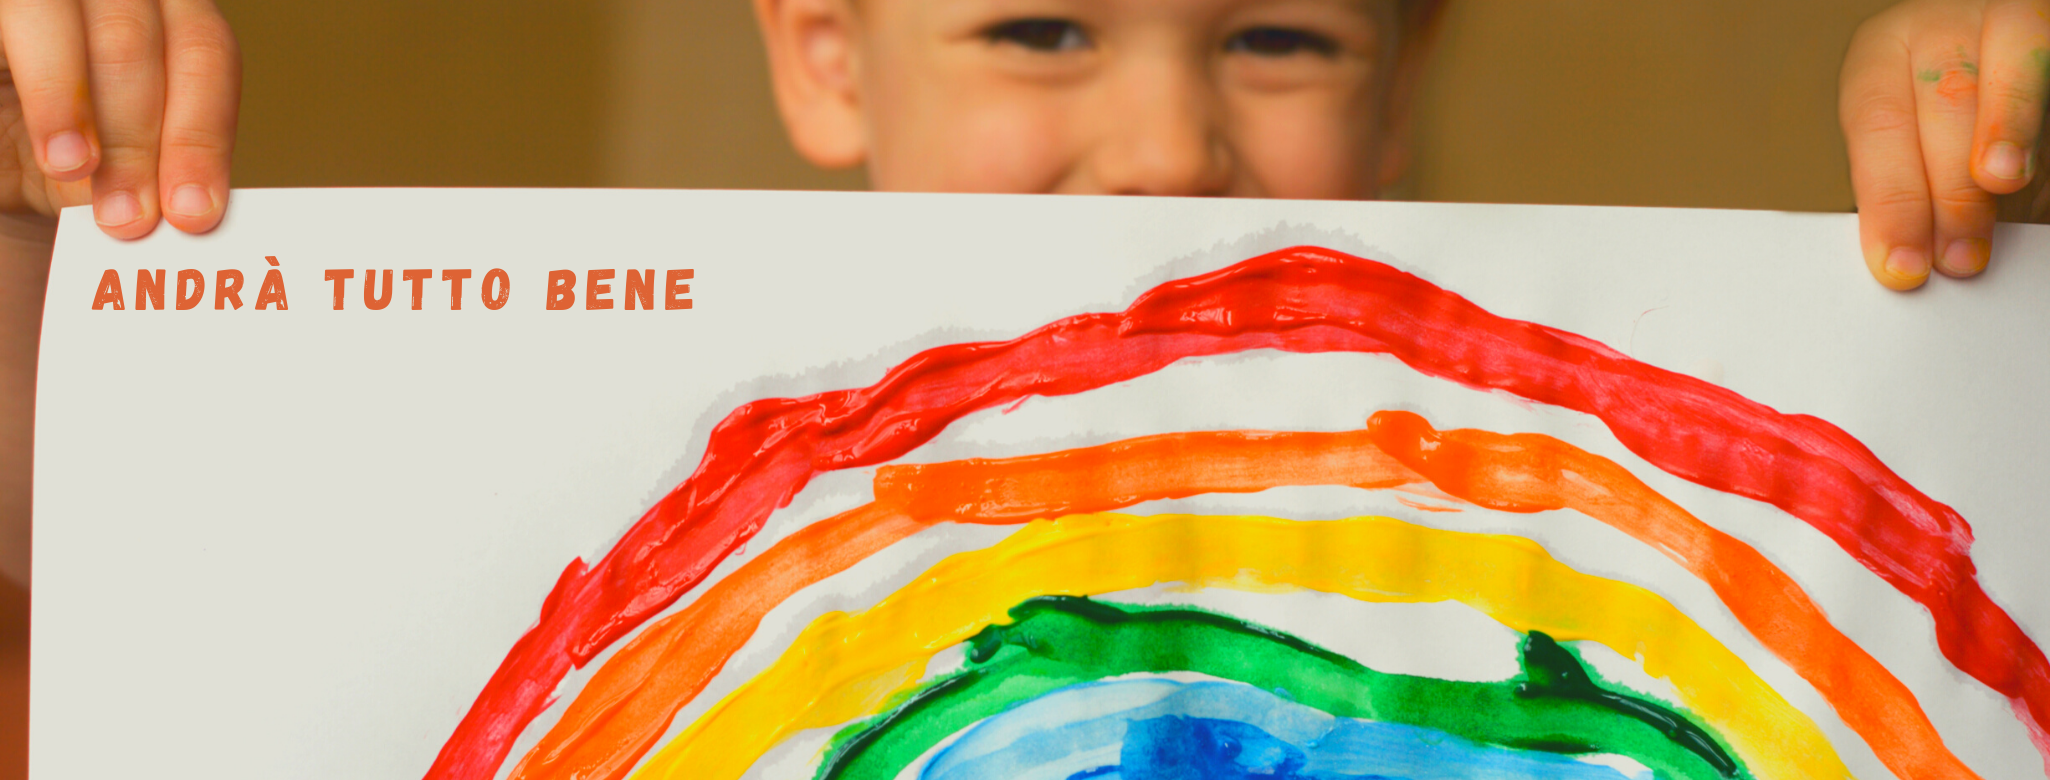 Imamgine di un bambino che tiene nelle mani un disegno di un arcobaleno "Andrà tutto bene"